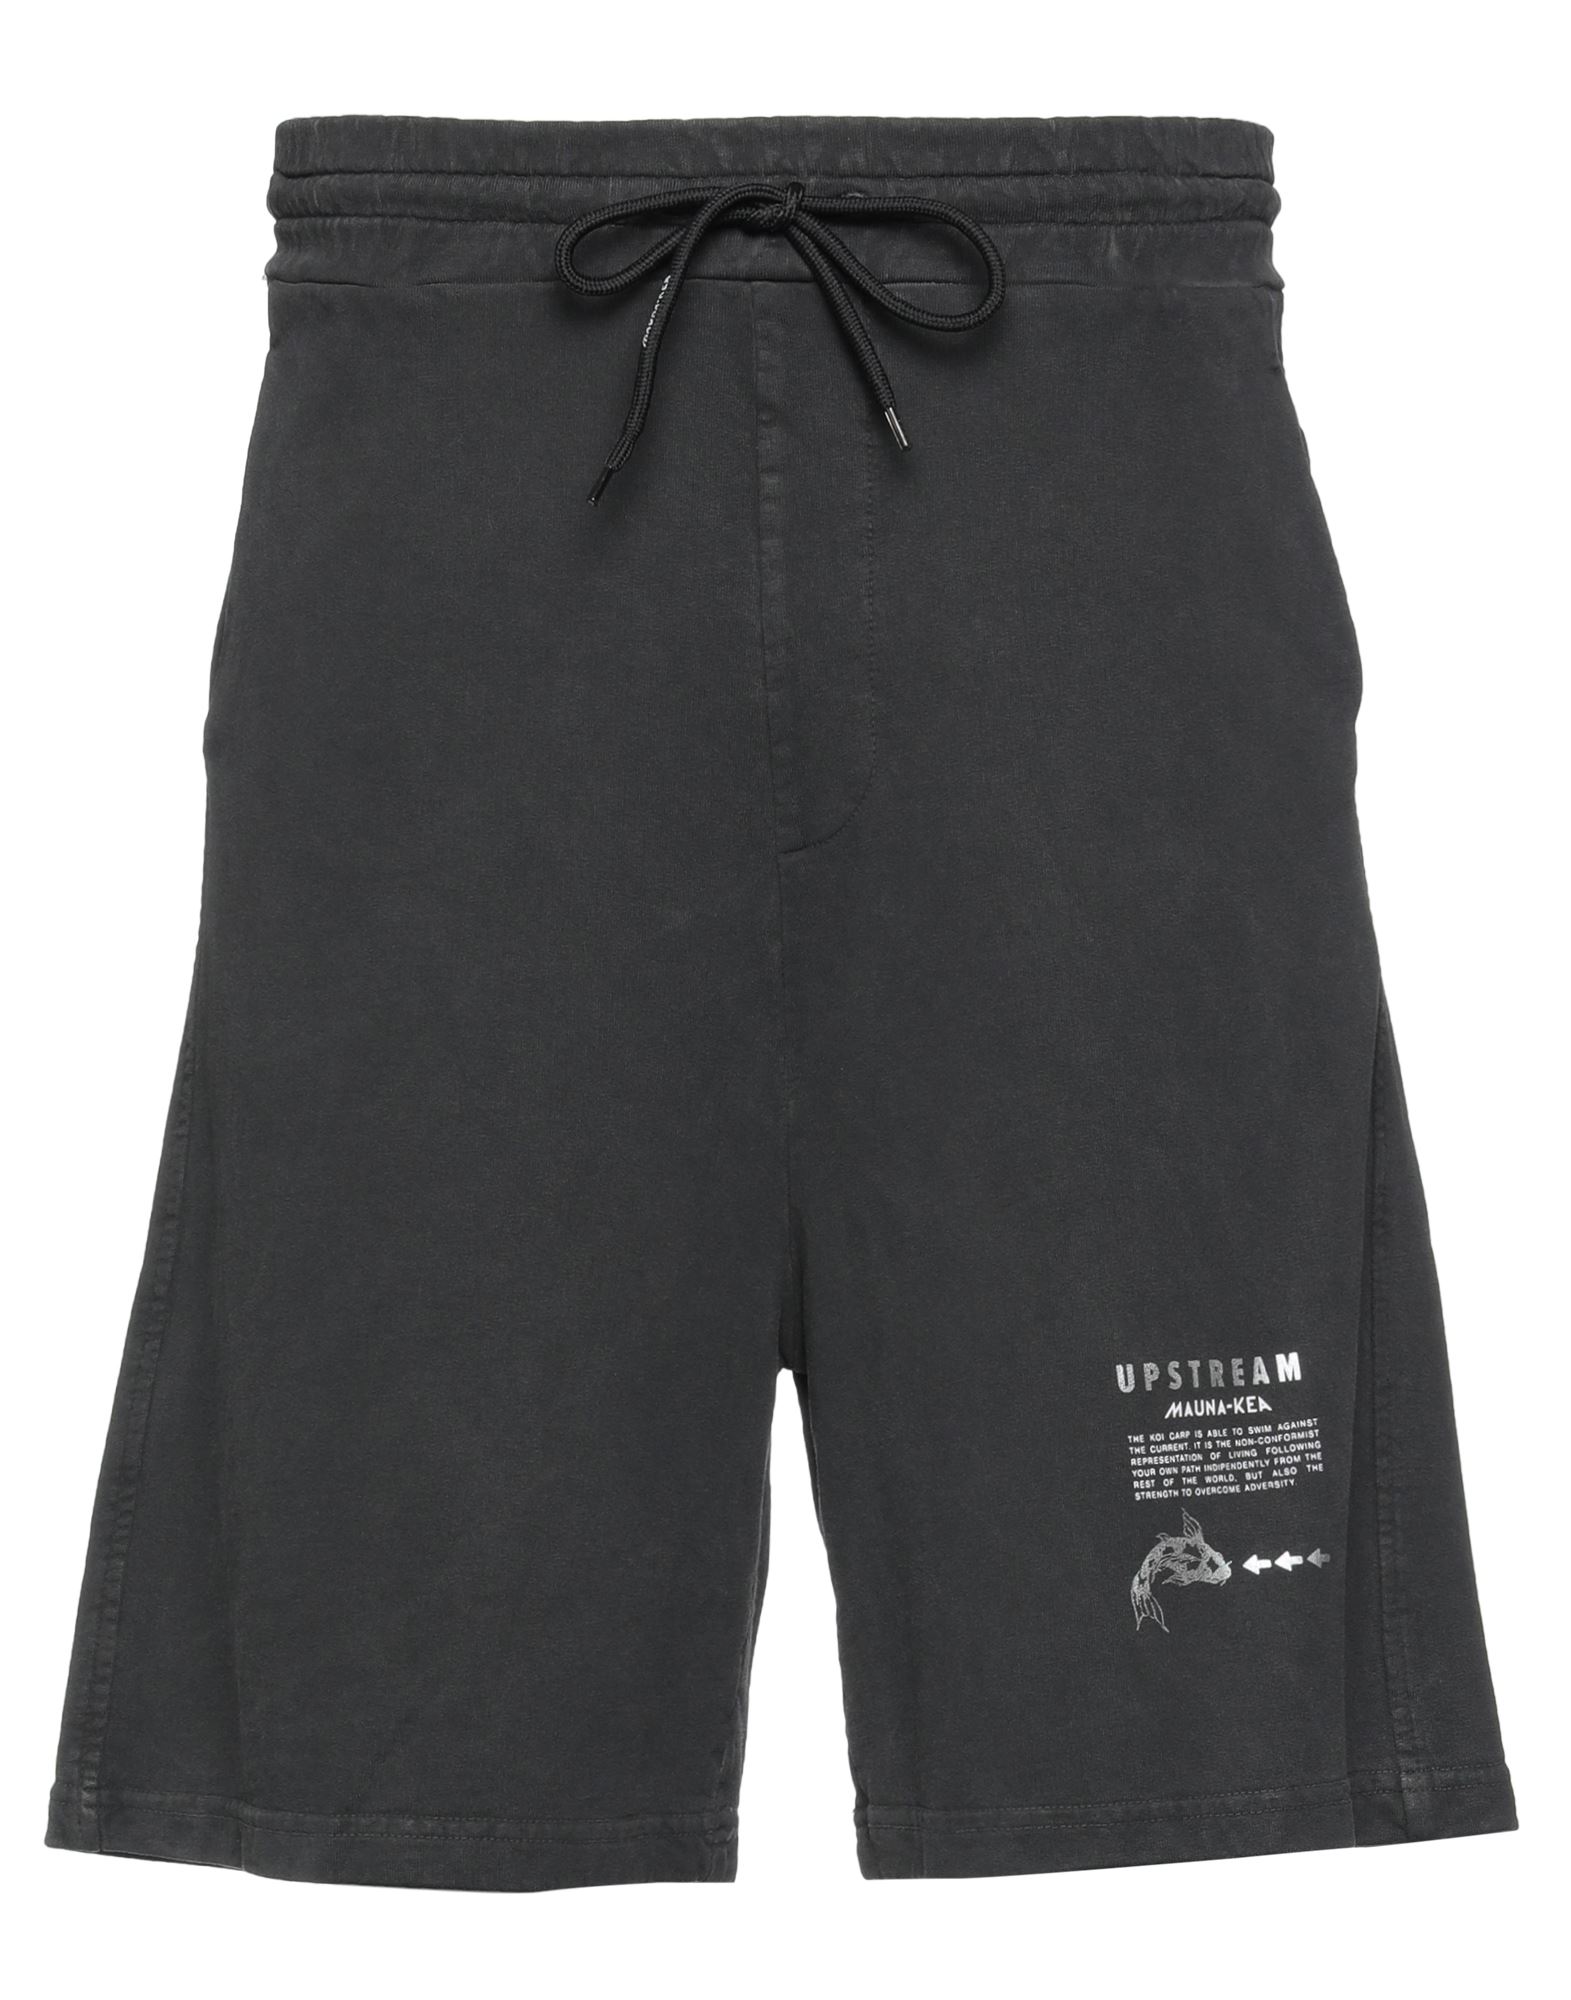 Mauna Kea Man Shorts & Bermuda Shorts Steel Grey Size M Cotton